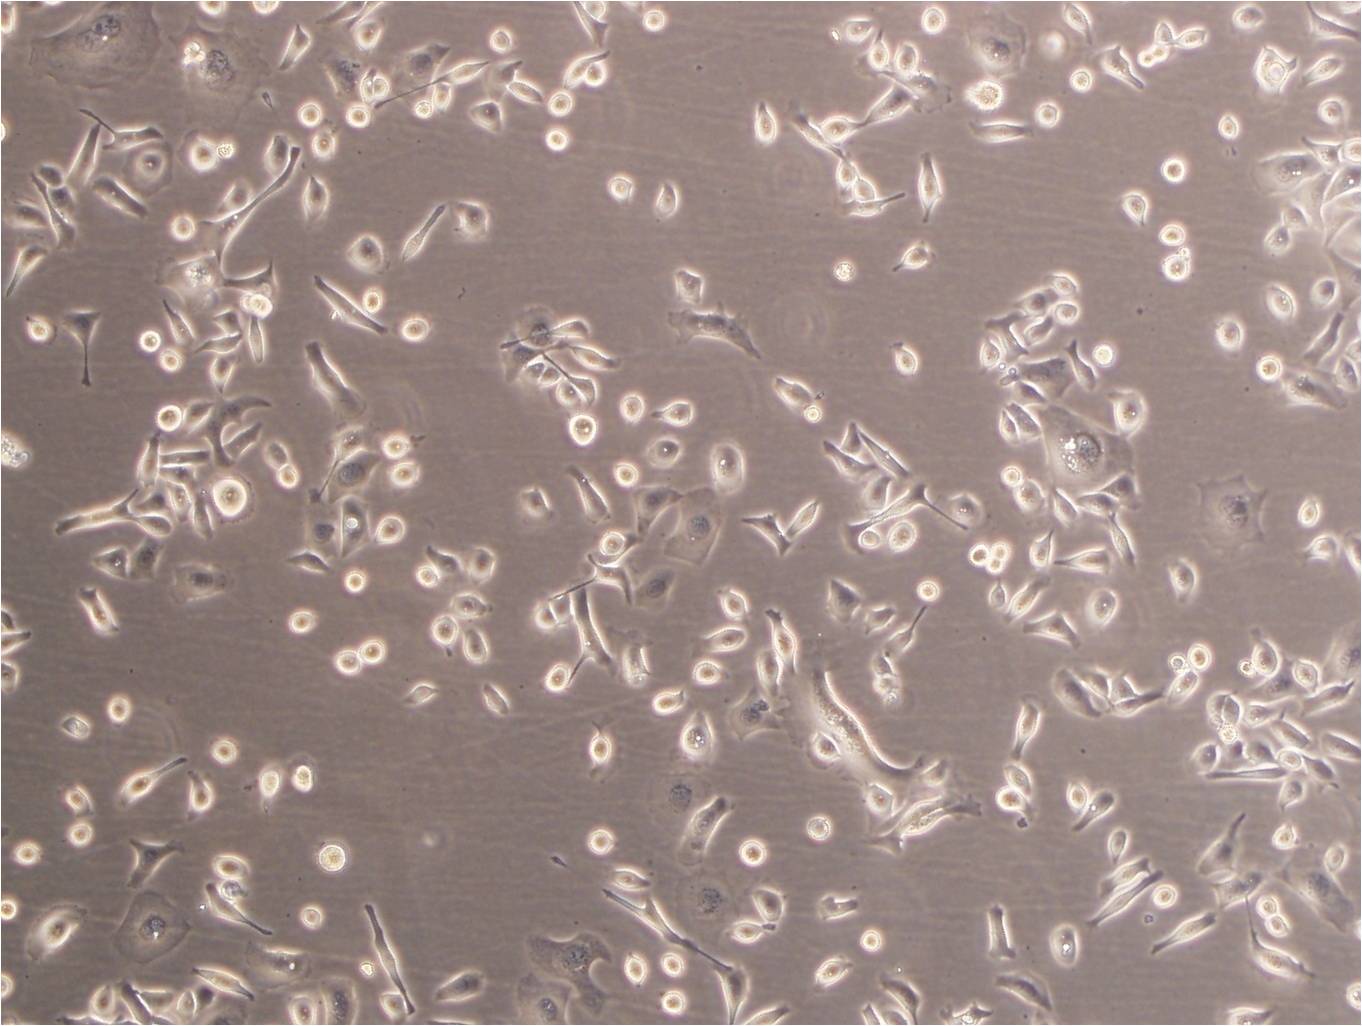 HFLS-RA Cells|类风湿关节炎成纤维样滑膜可传代细胞系